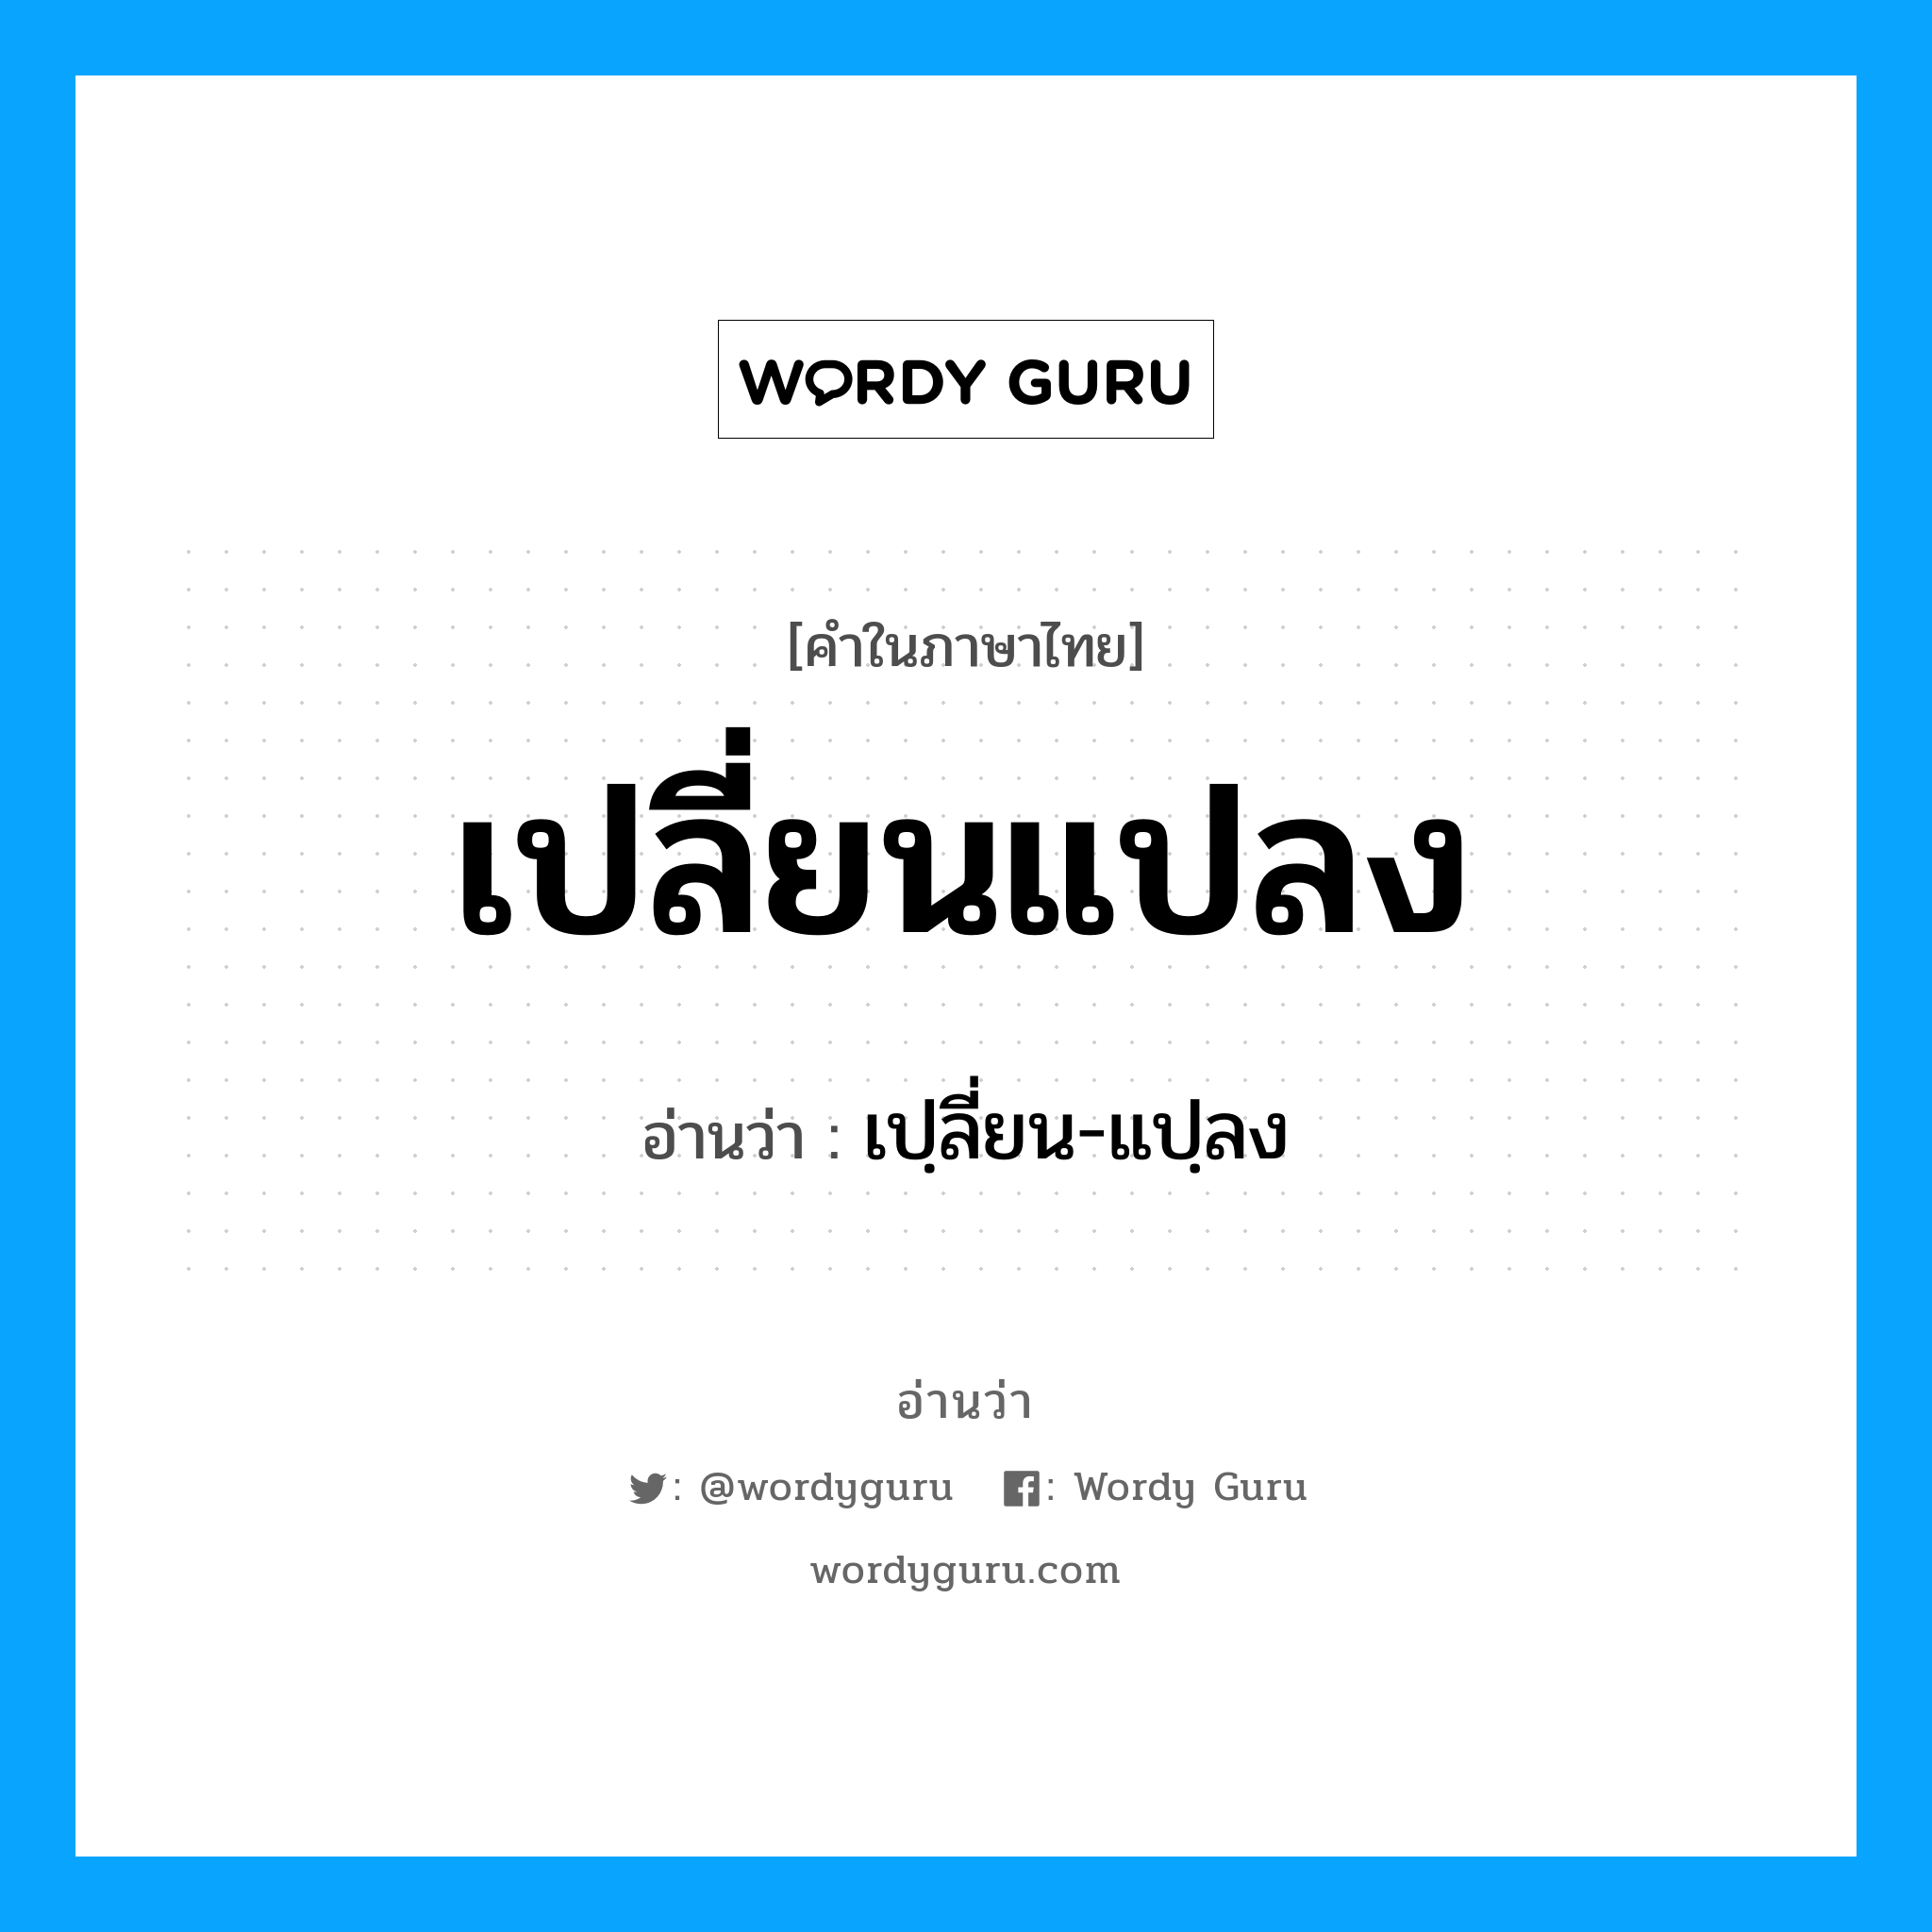 เปฺลี่ยน-แปฺลง เป็นคำอ่านของคำไหน?, คำในภาษาไทย เปฺลี่ยน-แปฺลง อ่านว่า เปลี่ยนแปลง